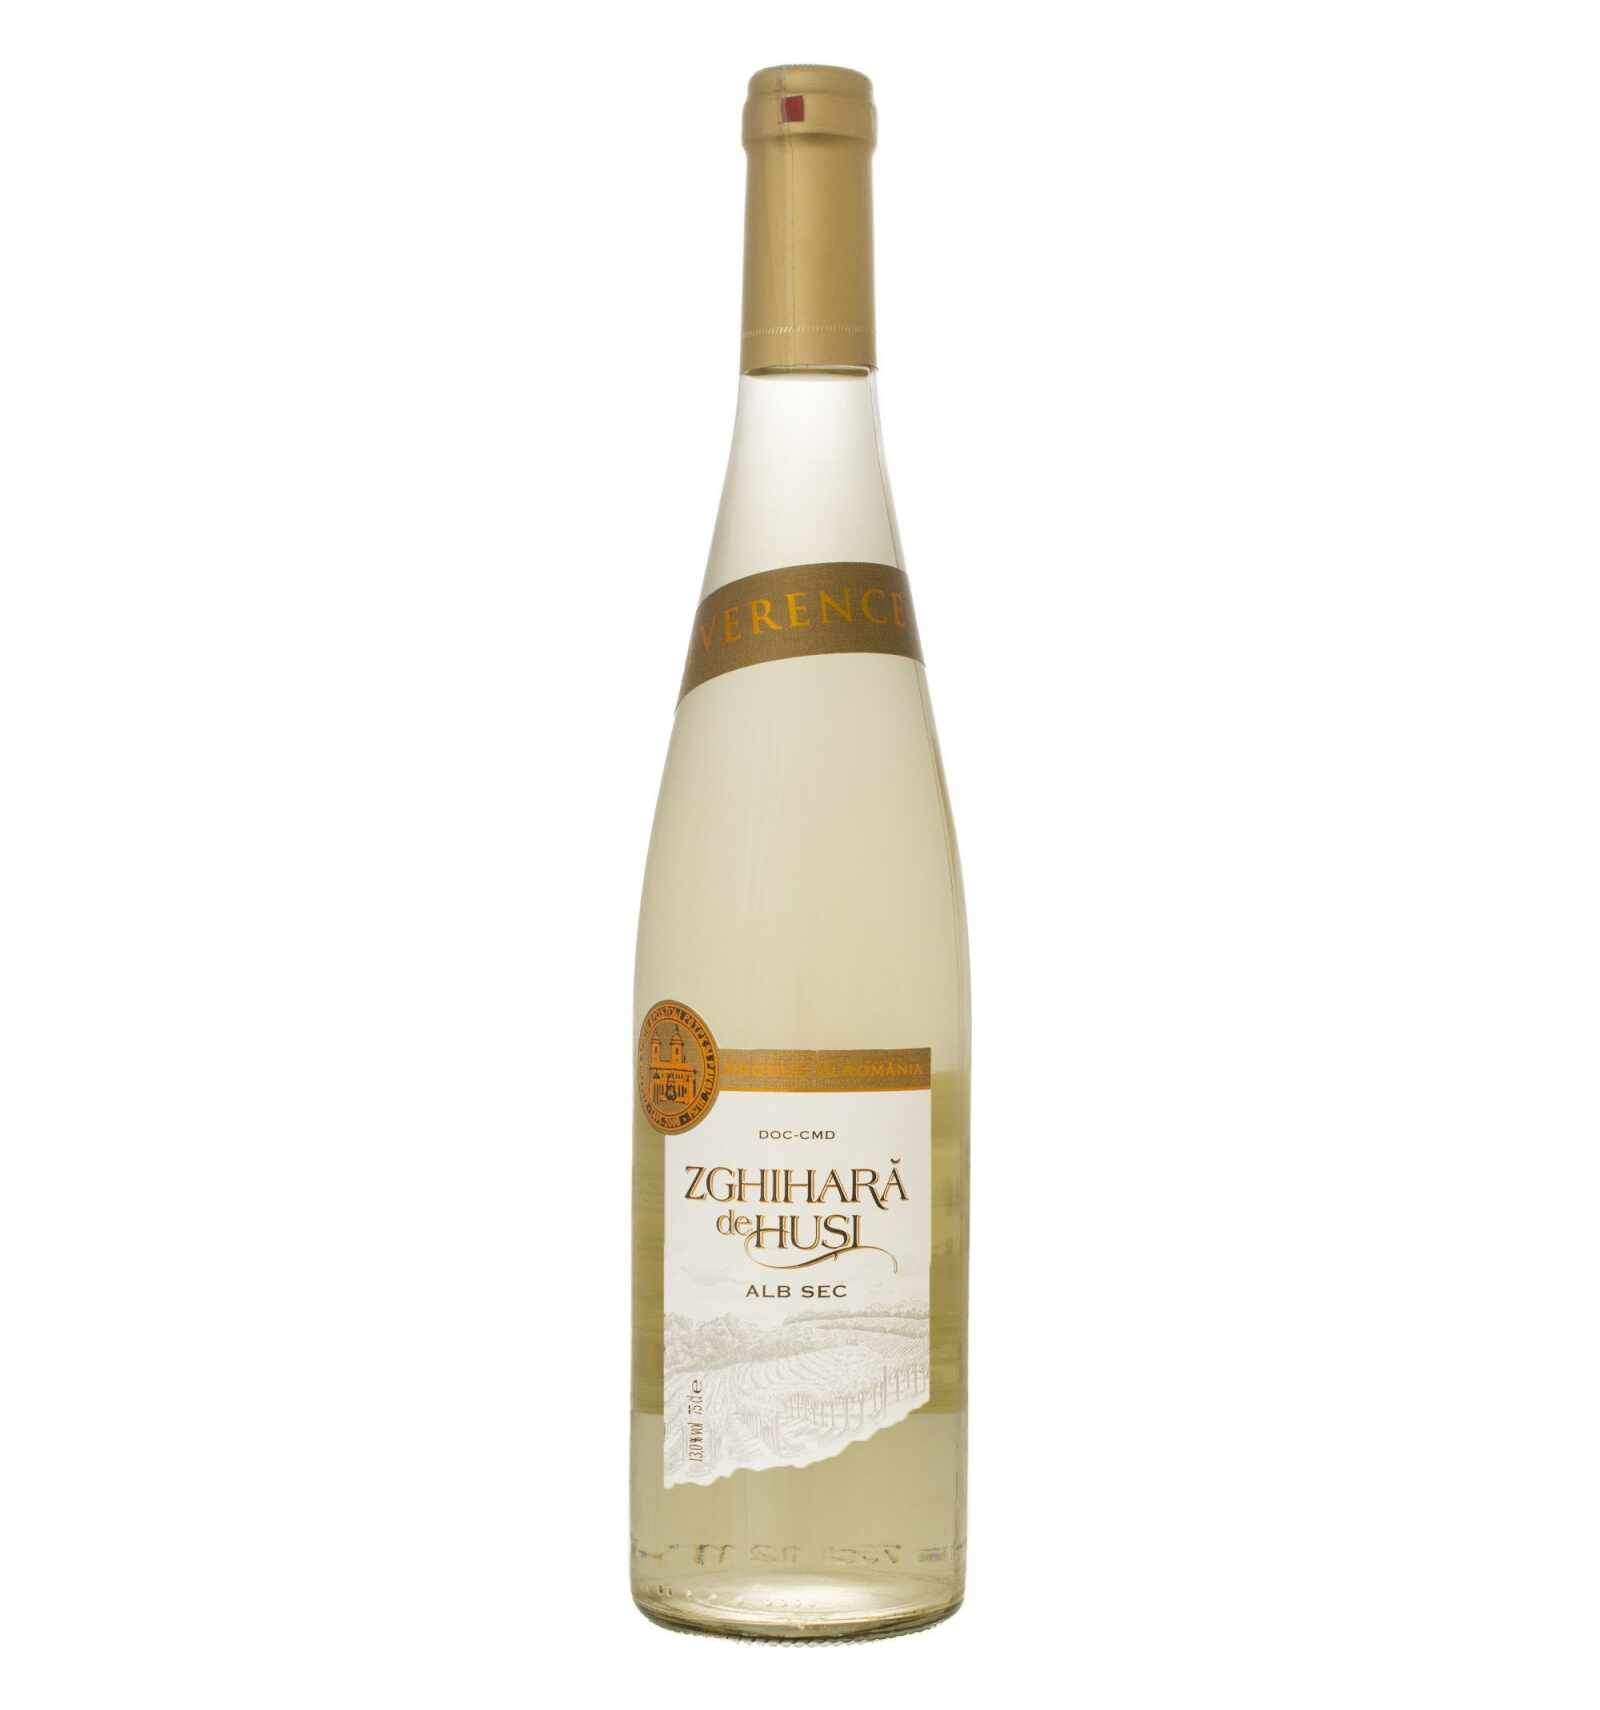 Vin alb sec, Zghihara De Husi, 13% alc., 0.75L, Romania